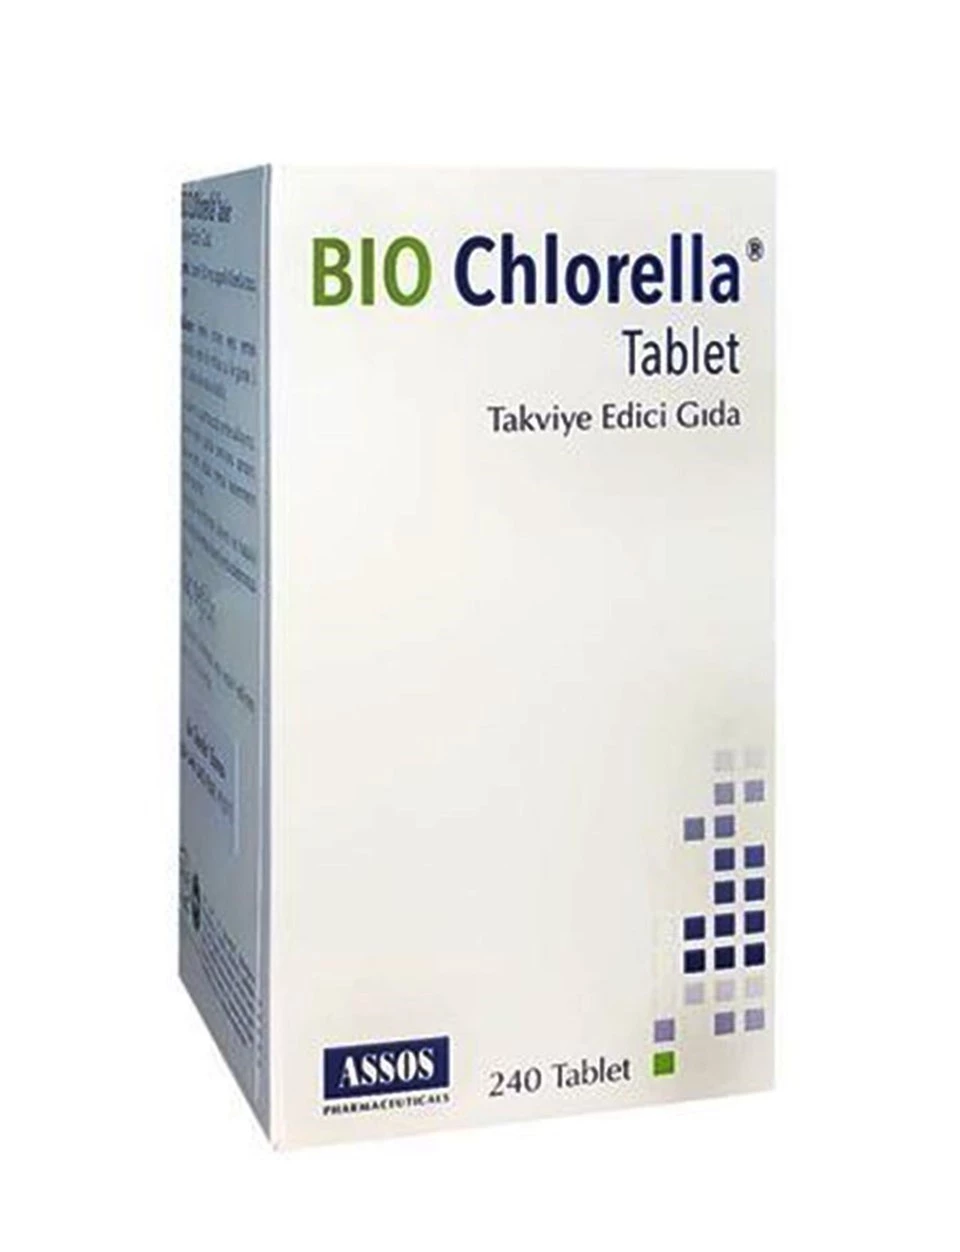 Bio Chlorella Tablet